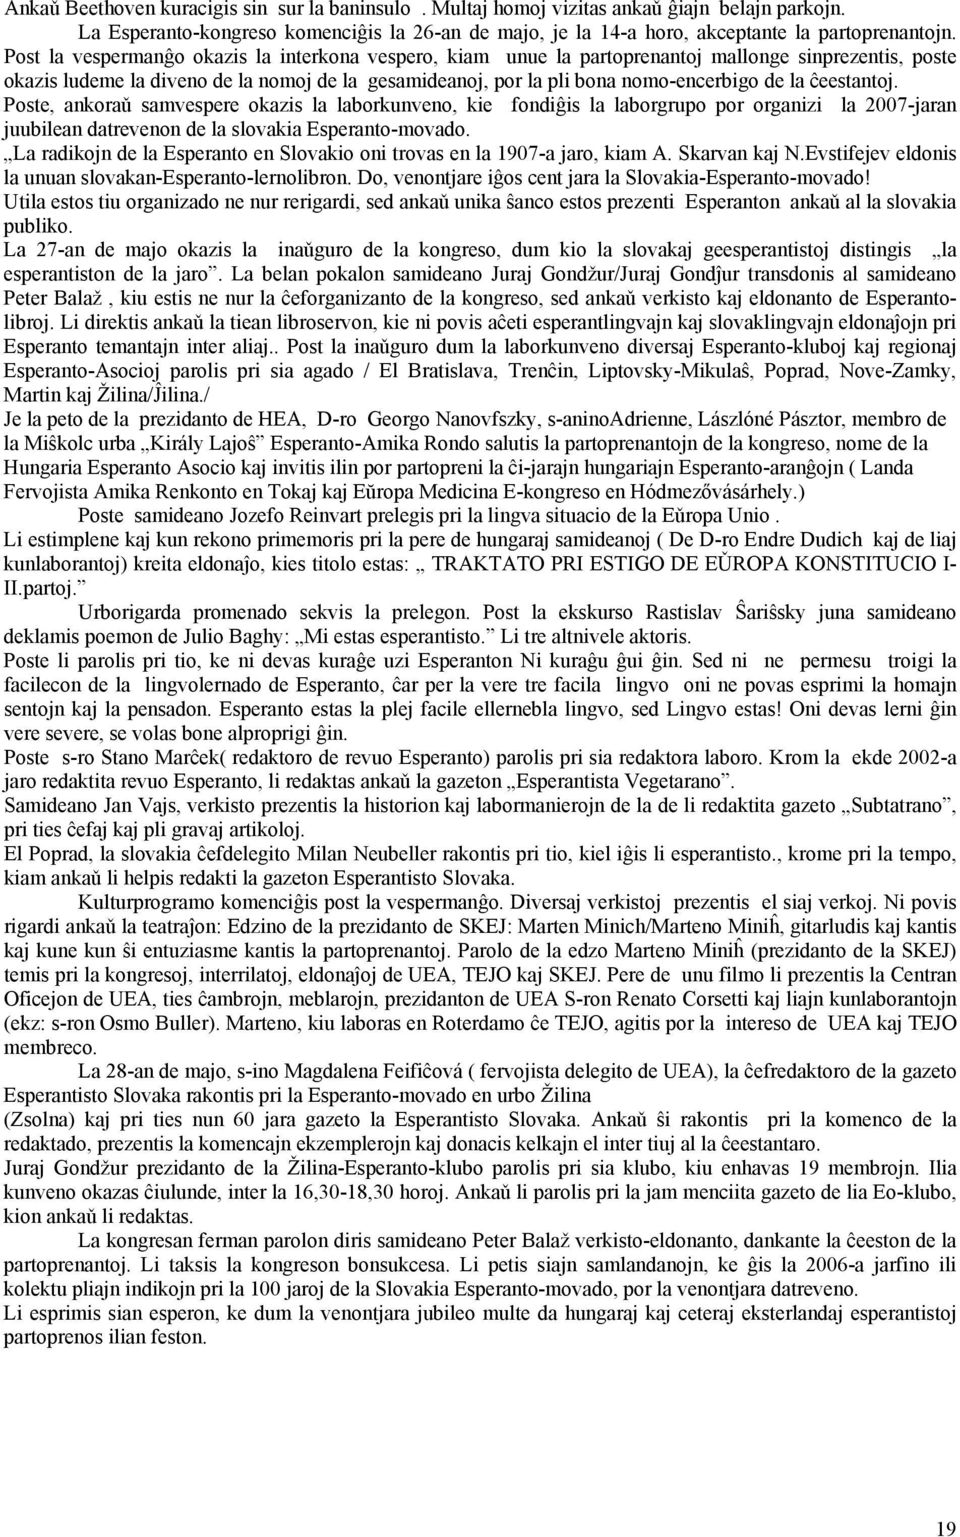 ĉeestantoj. Poste, ankoraǔ samvespere okazis la laborkunveno, kie fondiĝis la laborgrupo por organizi la 2007-jaran juubilean datrevenon de la slovakia Esperanto-movado.